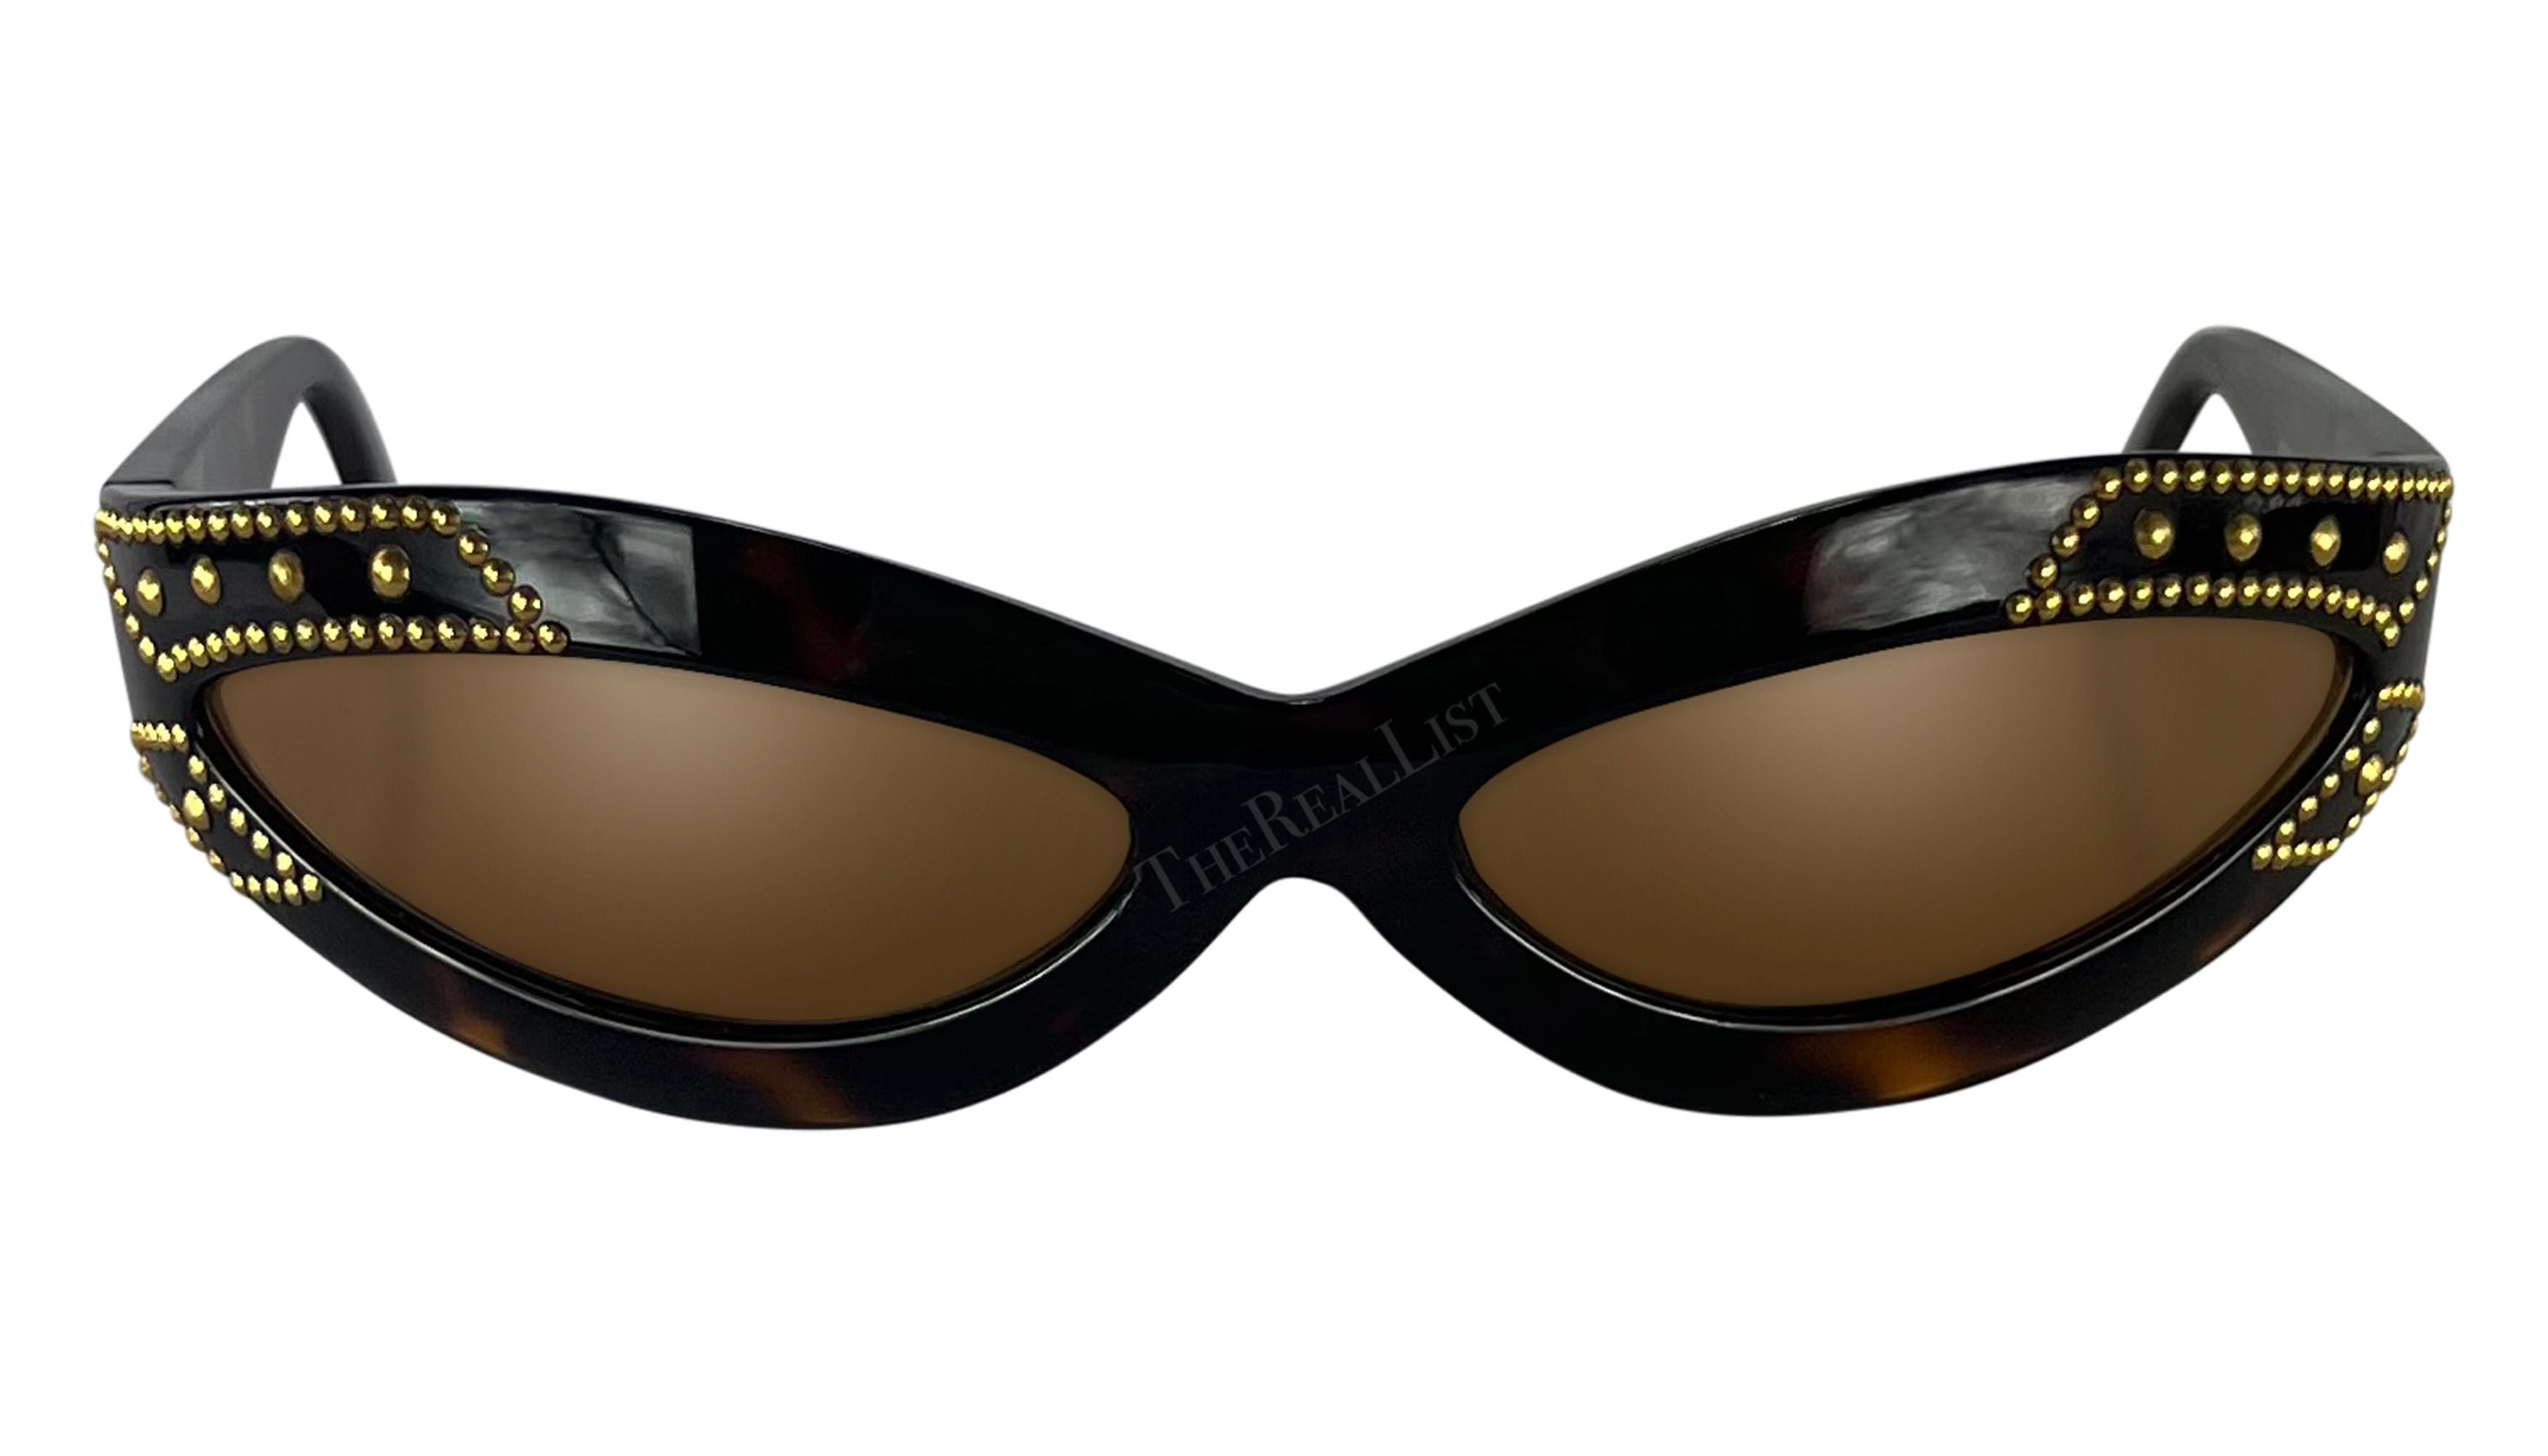 Datant des années 1990, ces lunettes de soleil ovales en fausse écaille, conçues par Gianni Versace, présentent un style enveloppant accentué par des clous dorés et un logo Versace Medusa sur un côté. 

Mesures approximatives-
Hauteur du cadre :